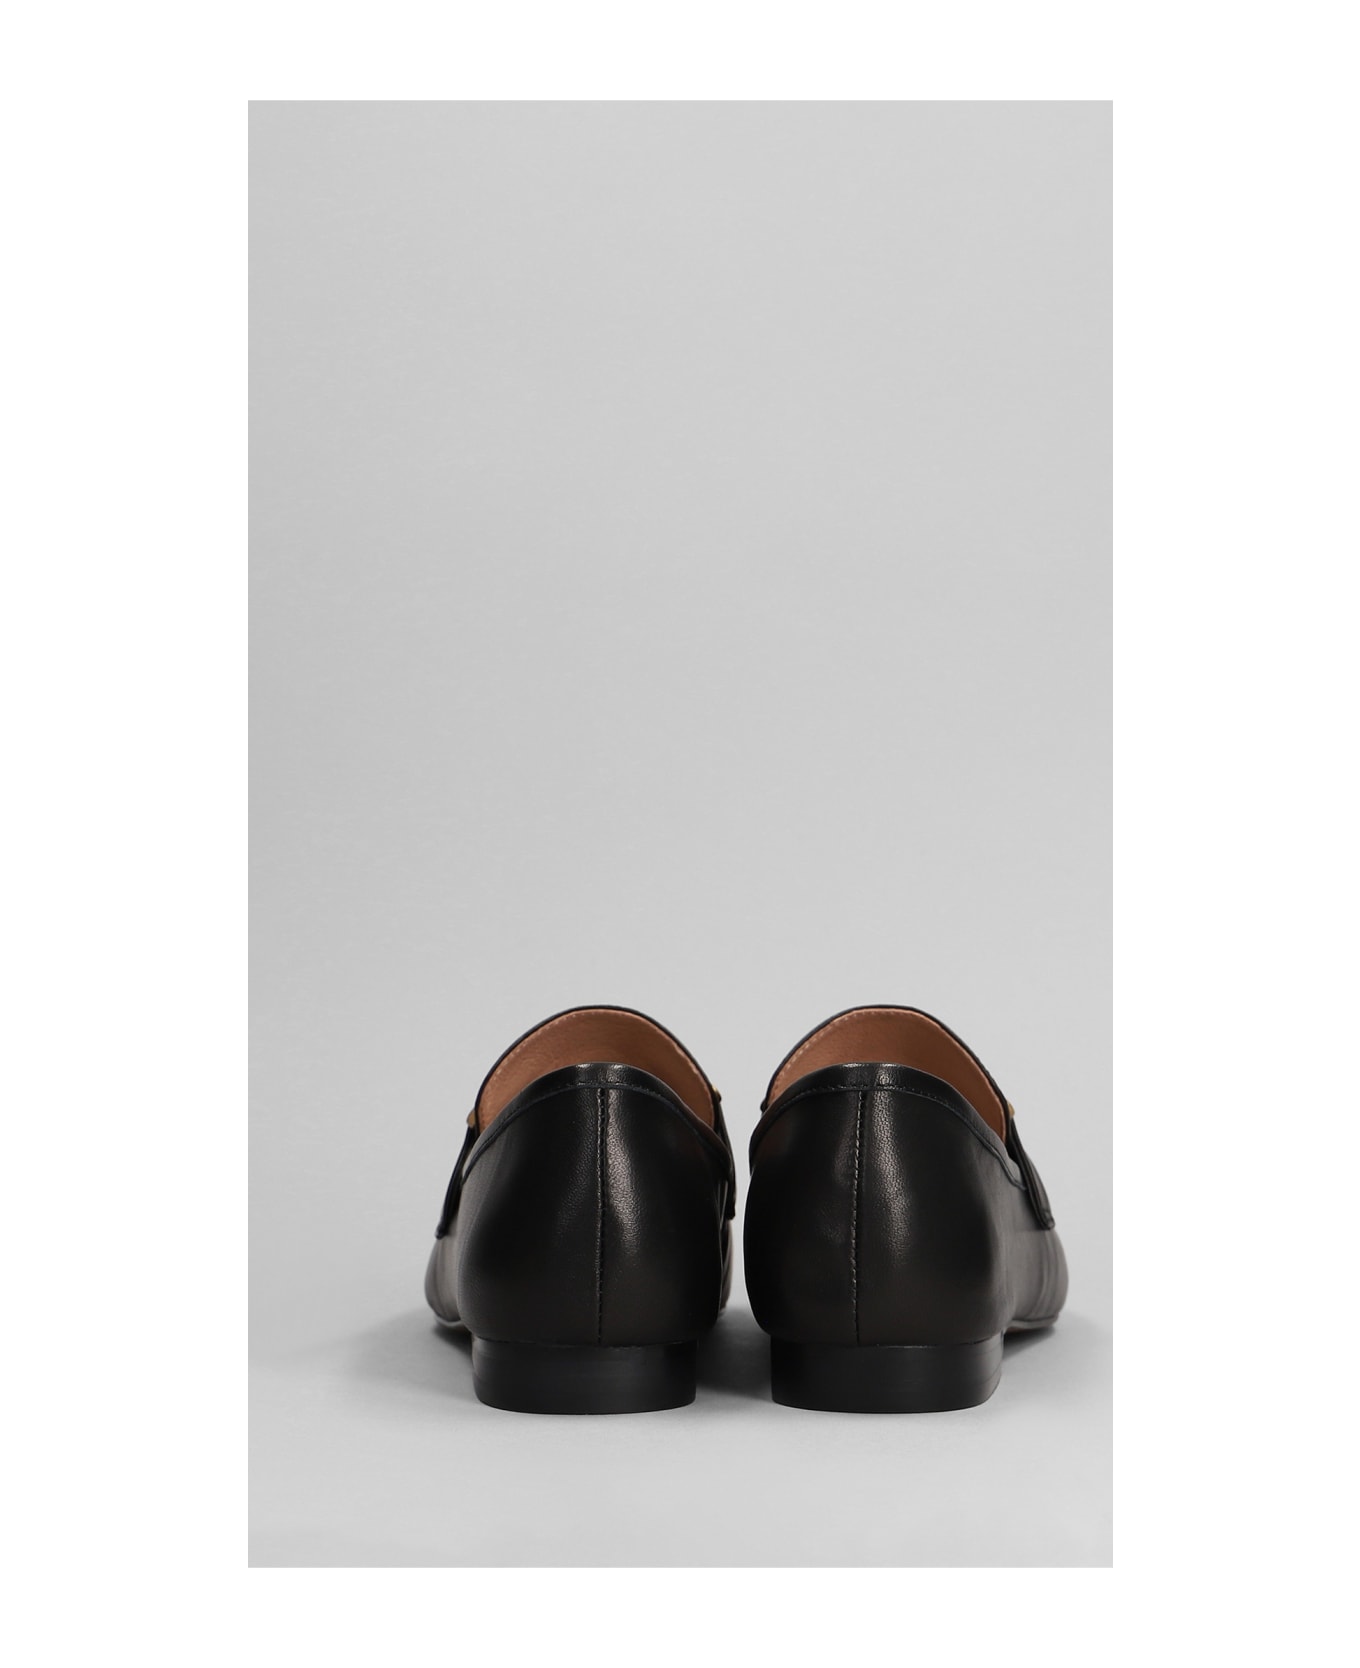 Bibi Lou Zagreb Ii Loafers In Black Leather - black フラットシューズ